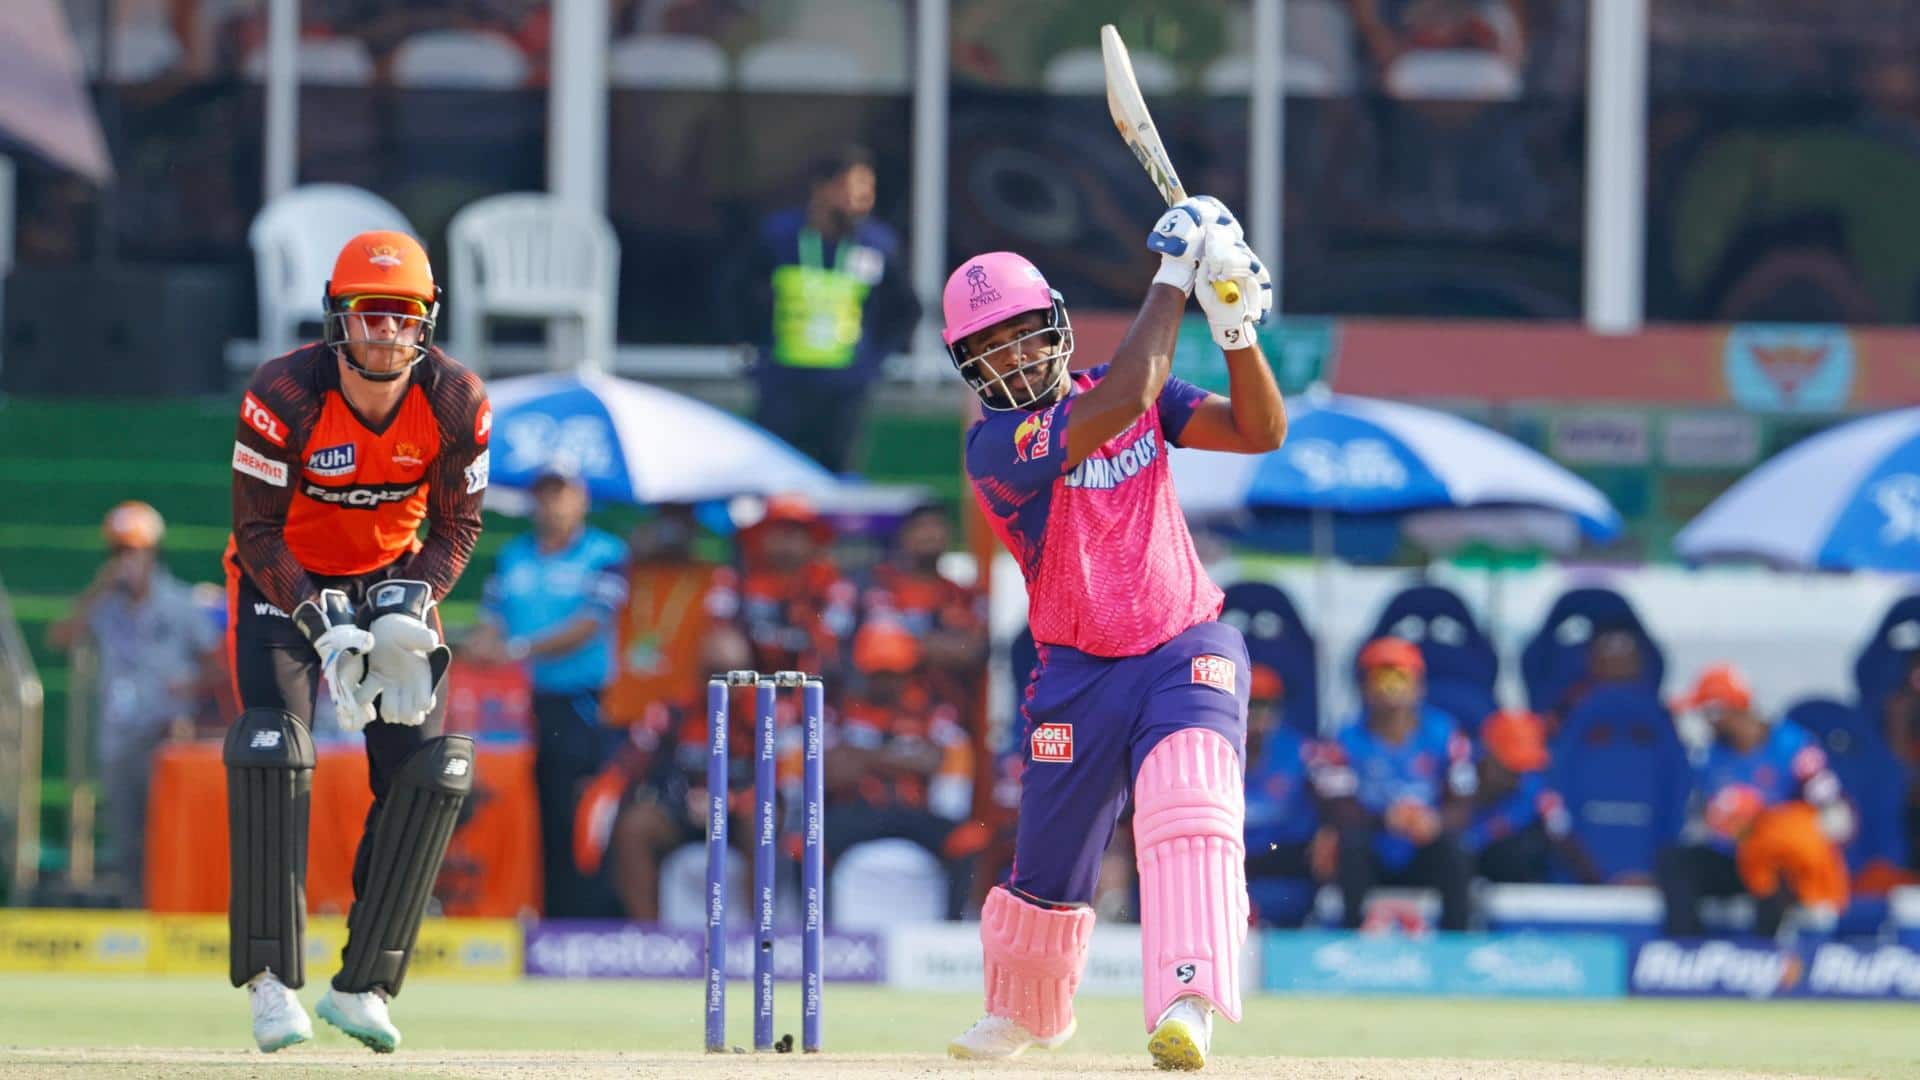 RR skipper Sanju Samson hammers his 18th IPL fifty: Stats